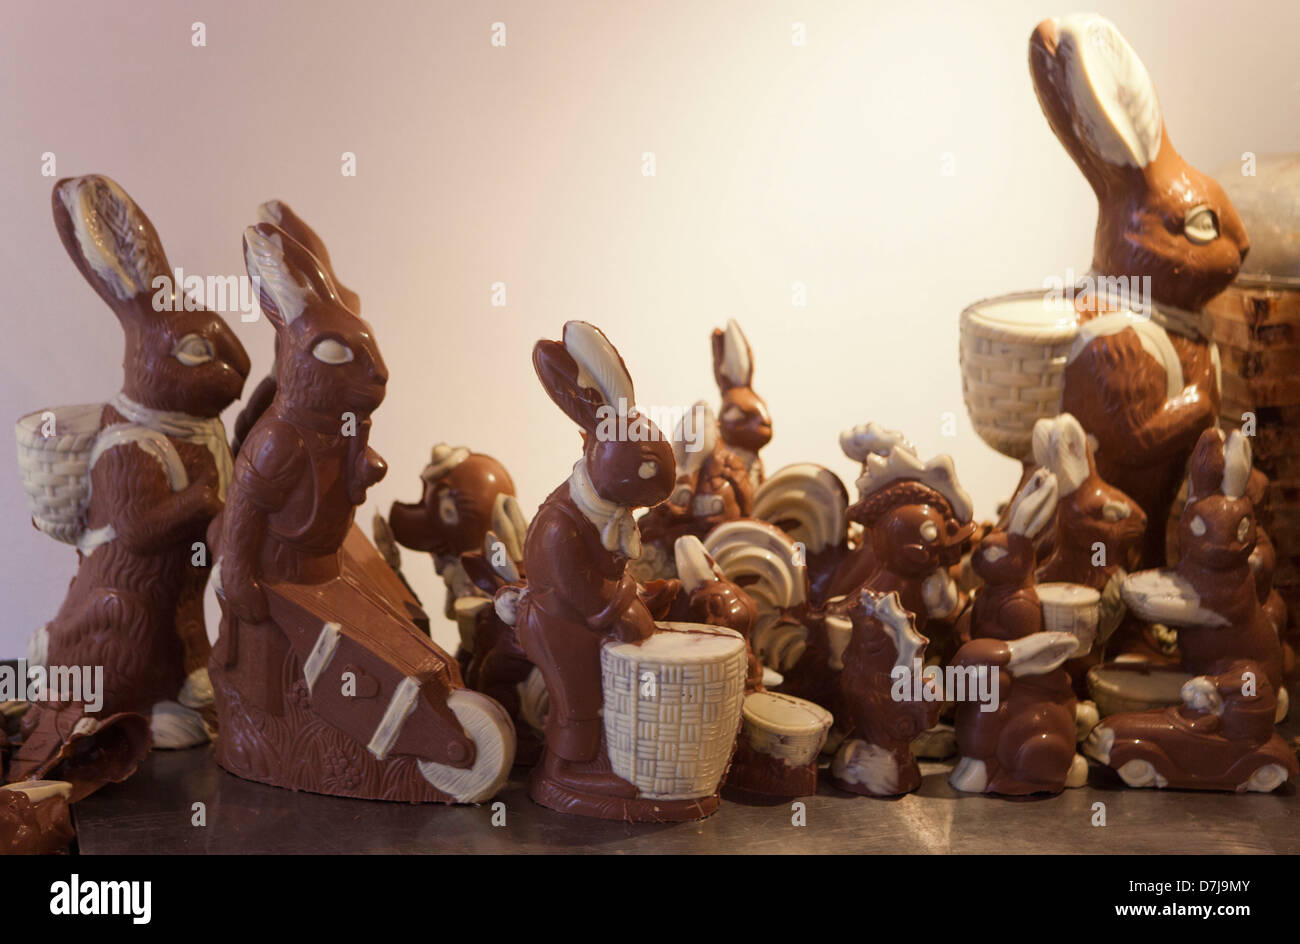 Fabrique de chocolat dans le netherlkands Banque D'Images